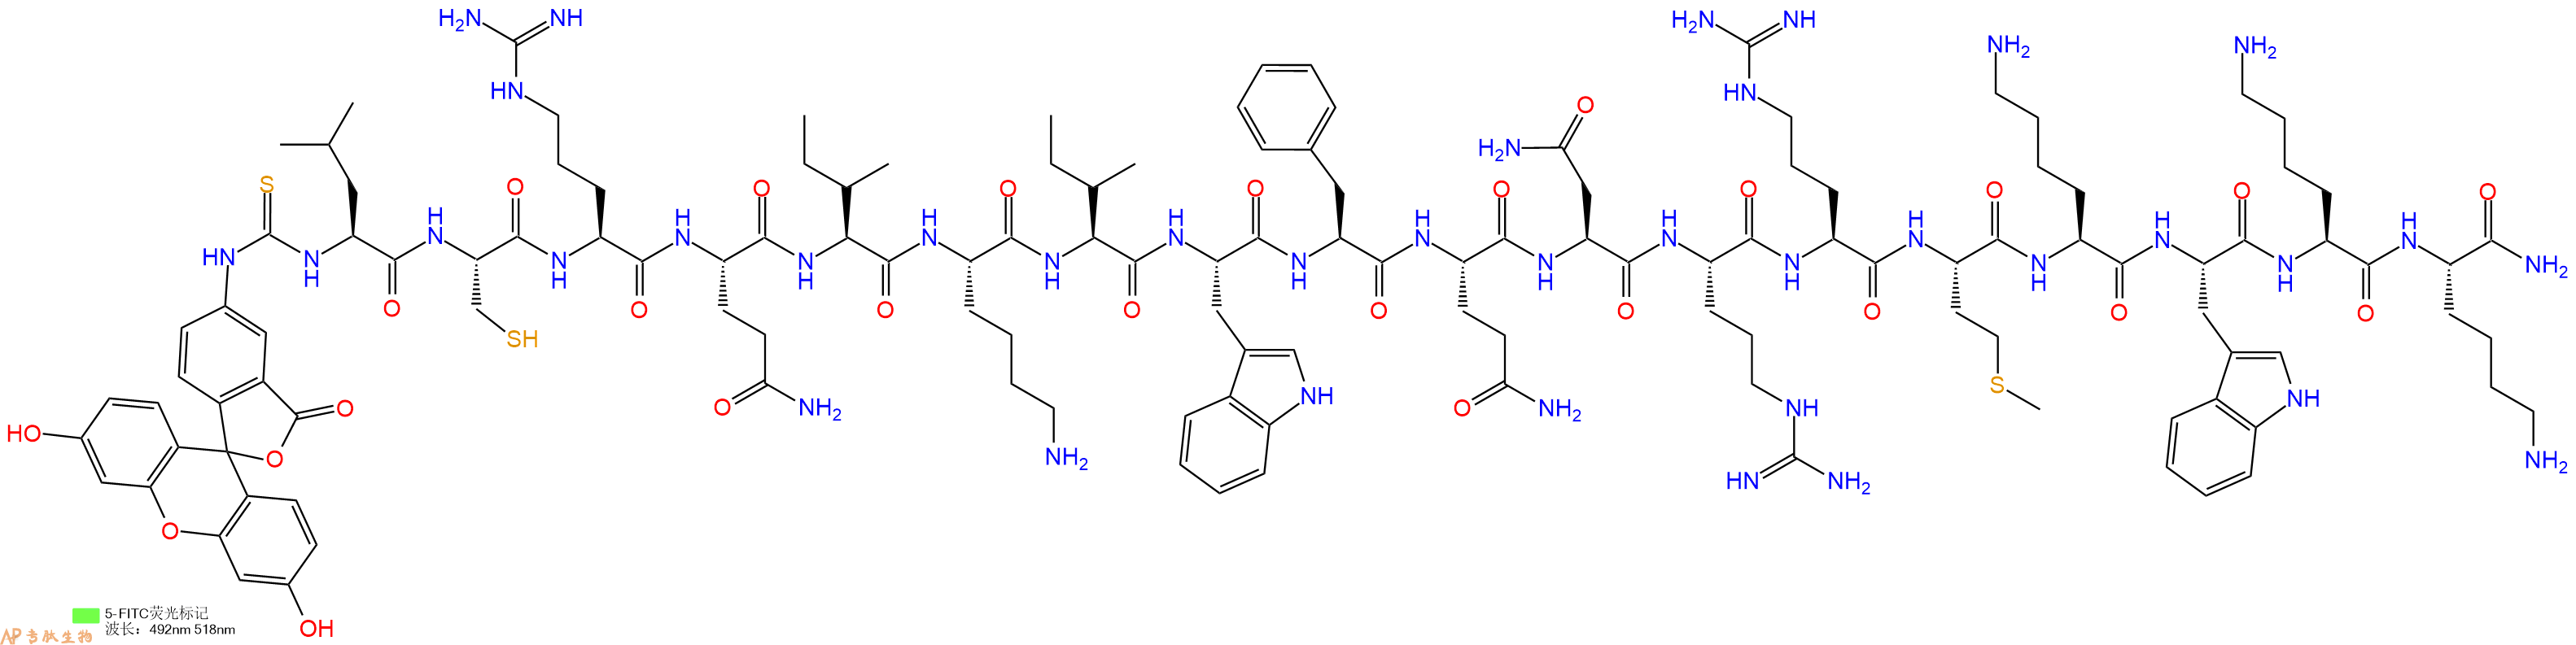 专肽生物产品5FITC-Leu-Cys-Arg-Gln-Ile-Lys-Ile-Trp-Phe-Gln-Asn-